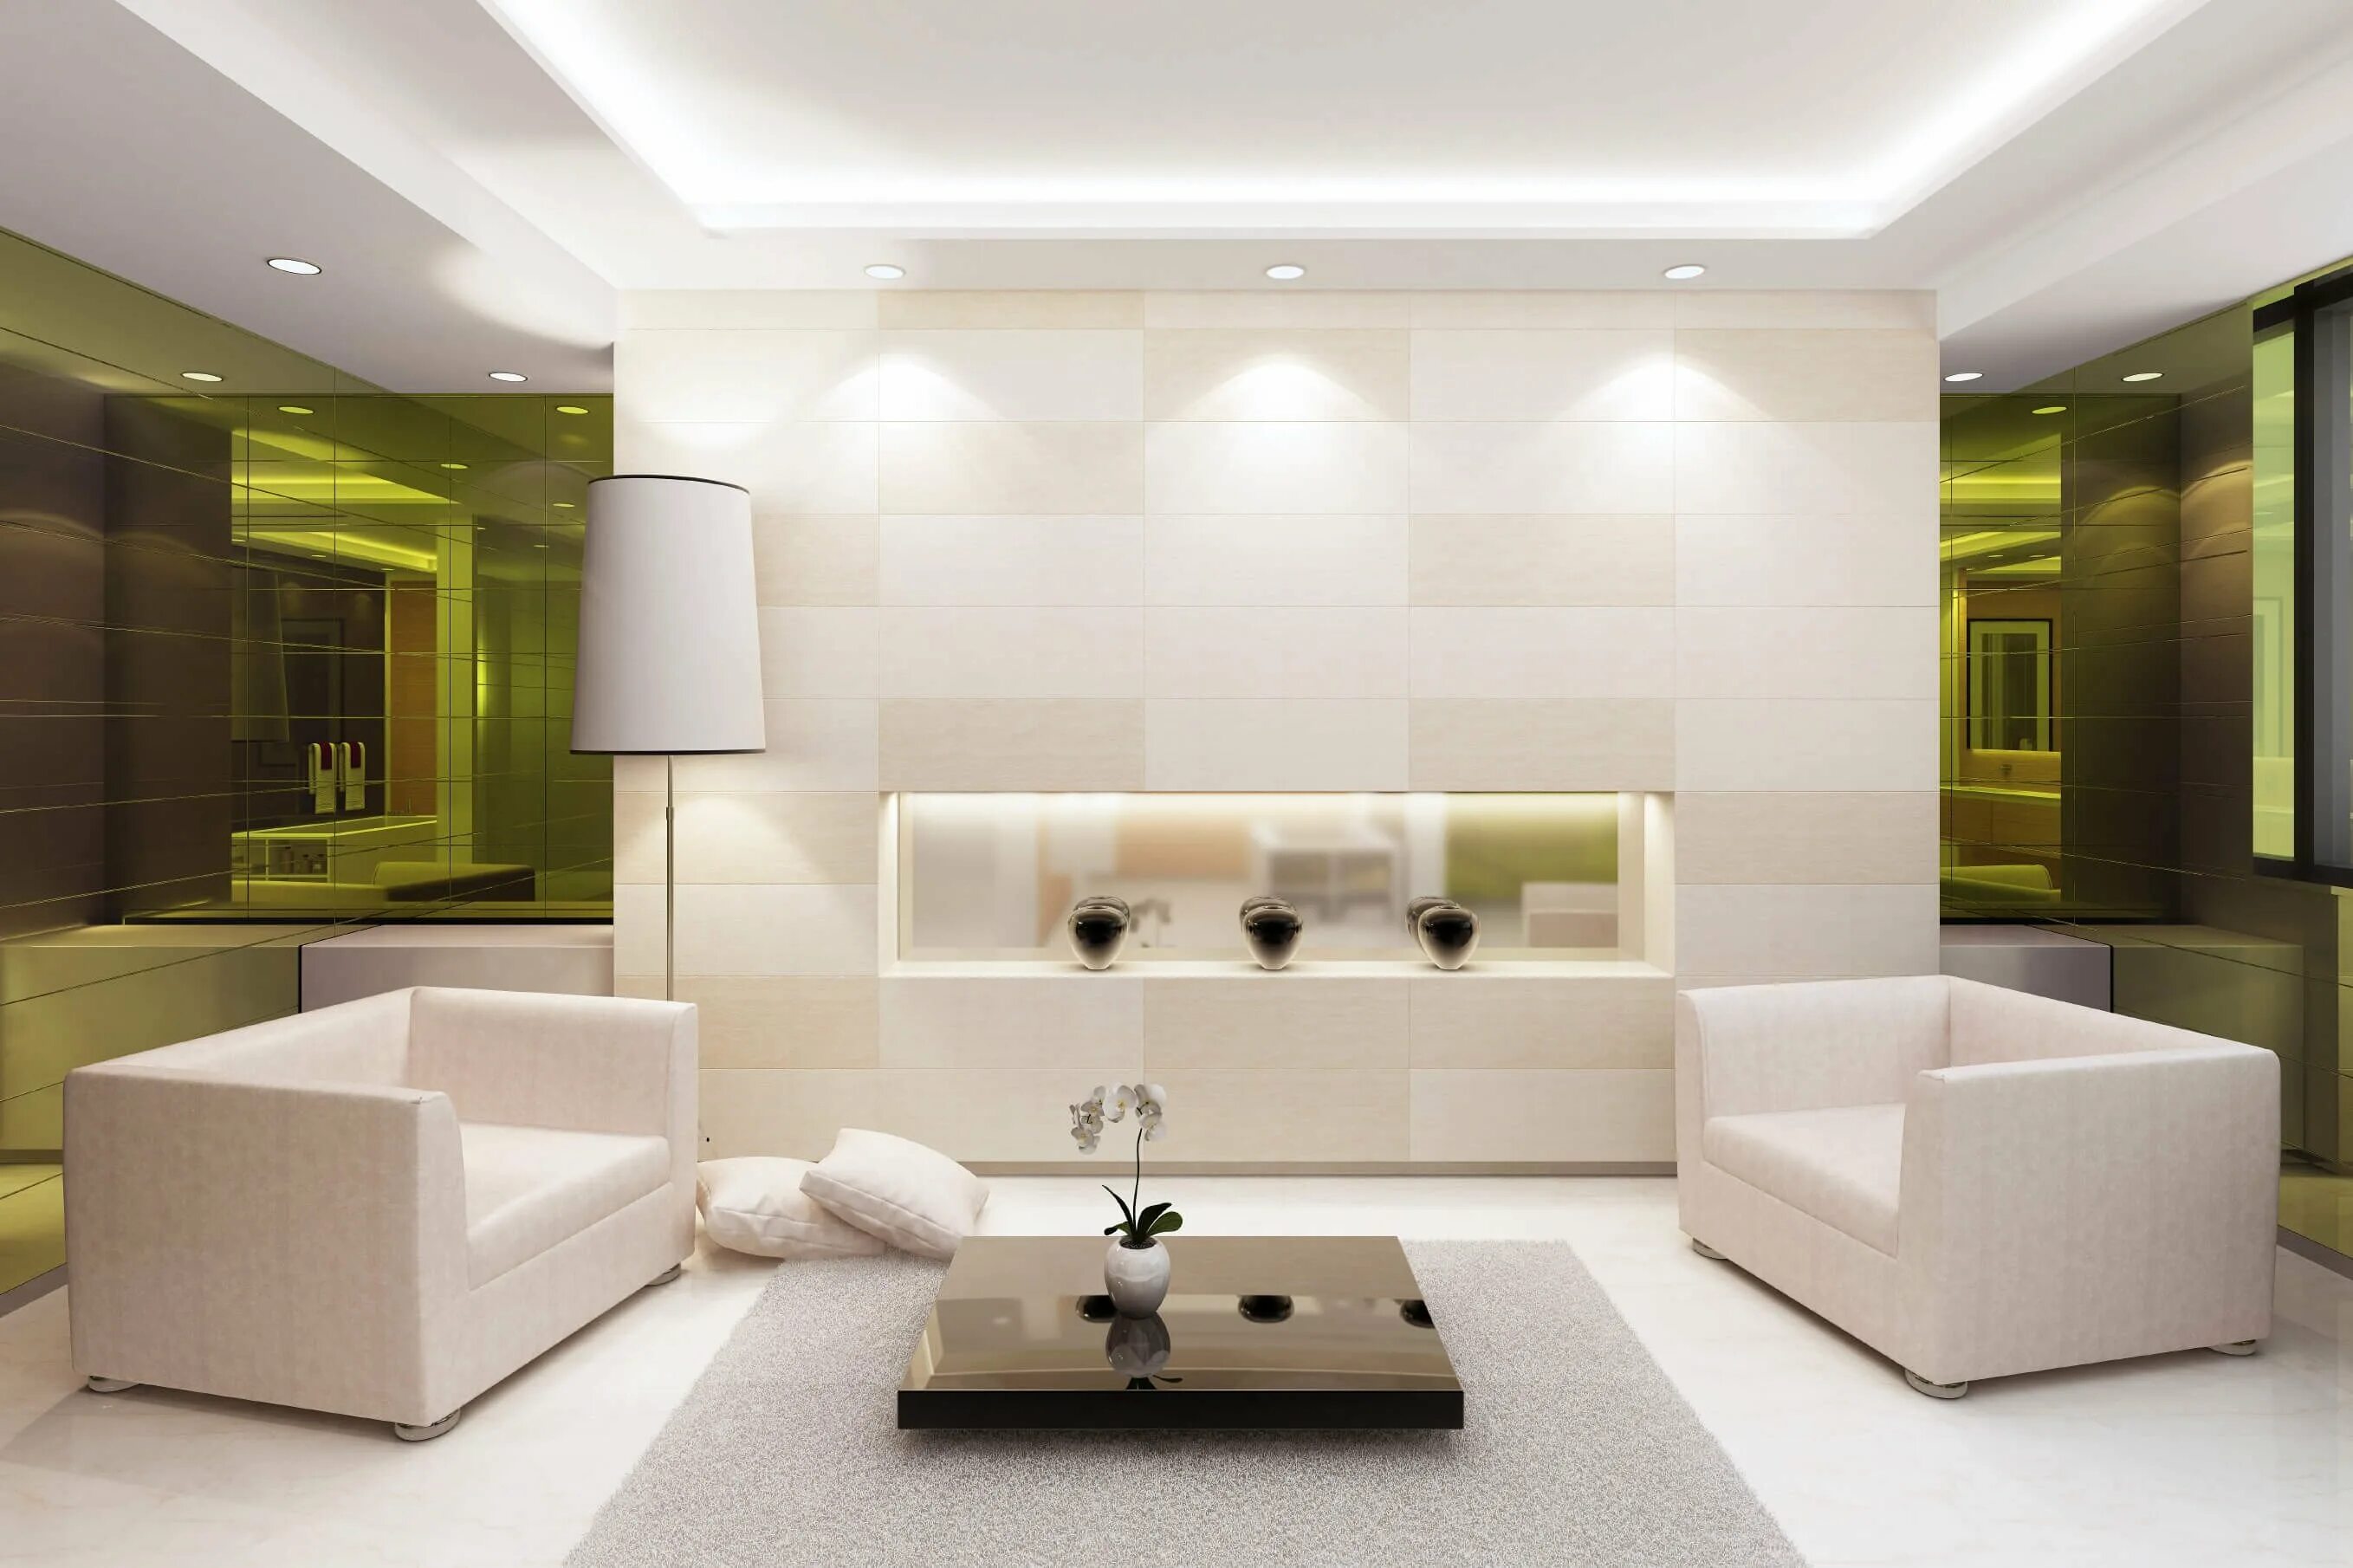 Современный интерьер гостиной. Освещение в гостиной. Дизайнерские решения для гостиной. Освещение в интерьере. Living interior